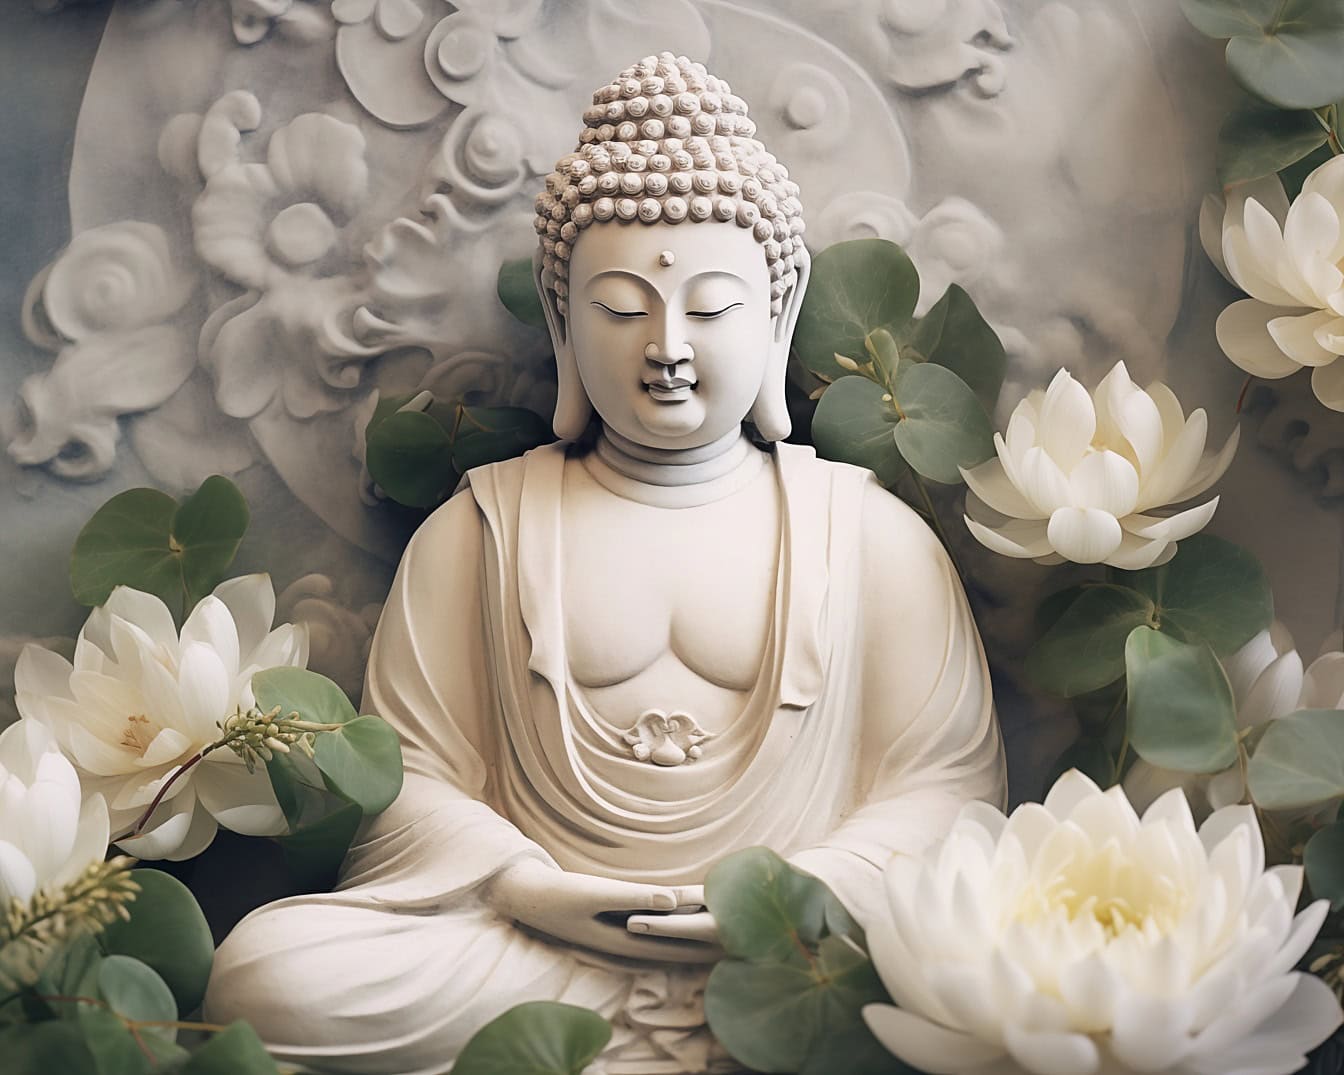 Het standbeeld van Boedha in transcendente Meditatie omringd door lotusbloembloemen die Zen als spirituele filosofie uitbeelden